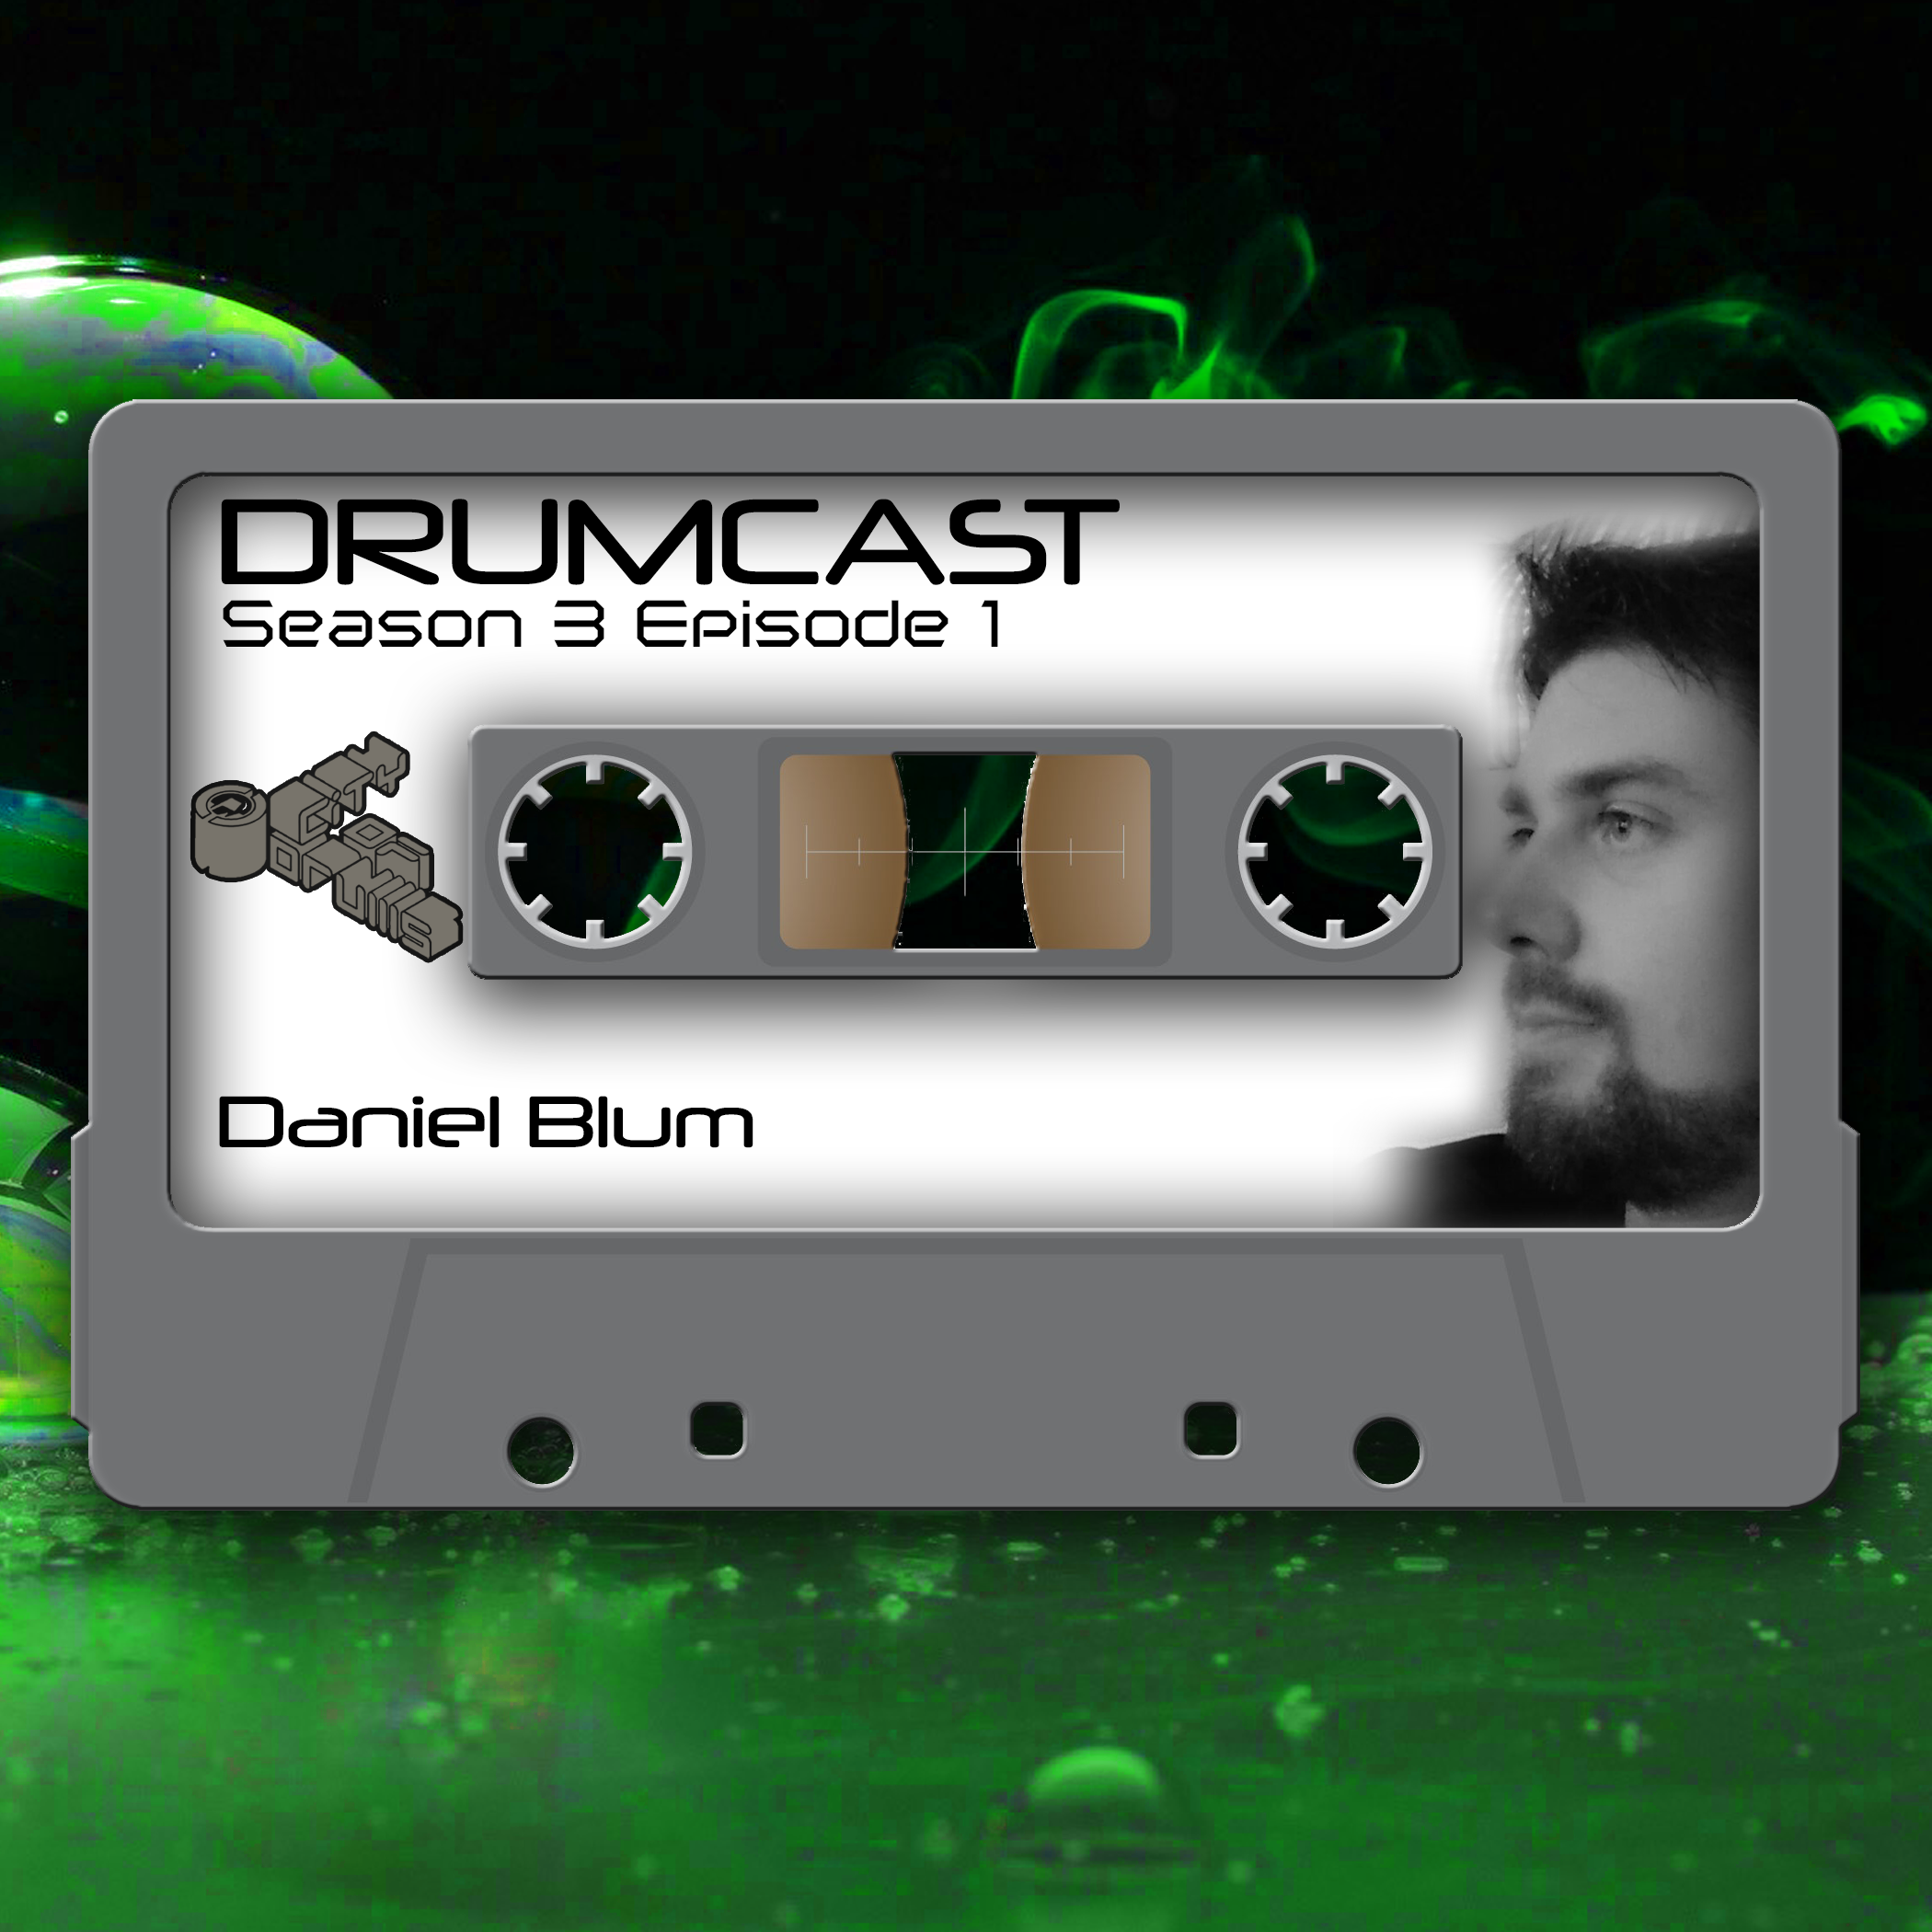 DRUMCAST Season 3 Episode 1 mit Daniel Blum! 13